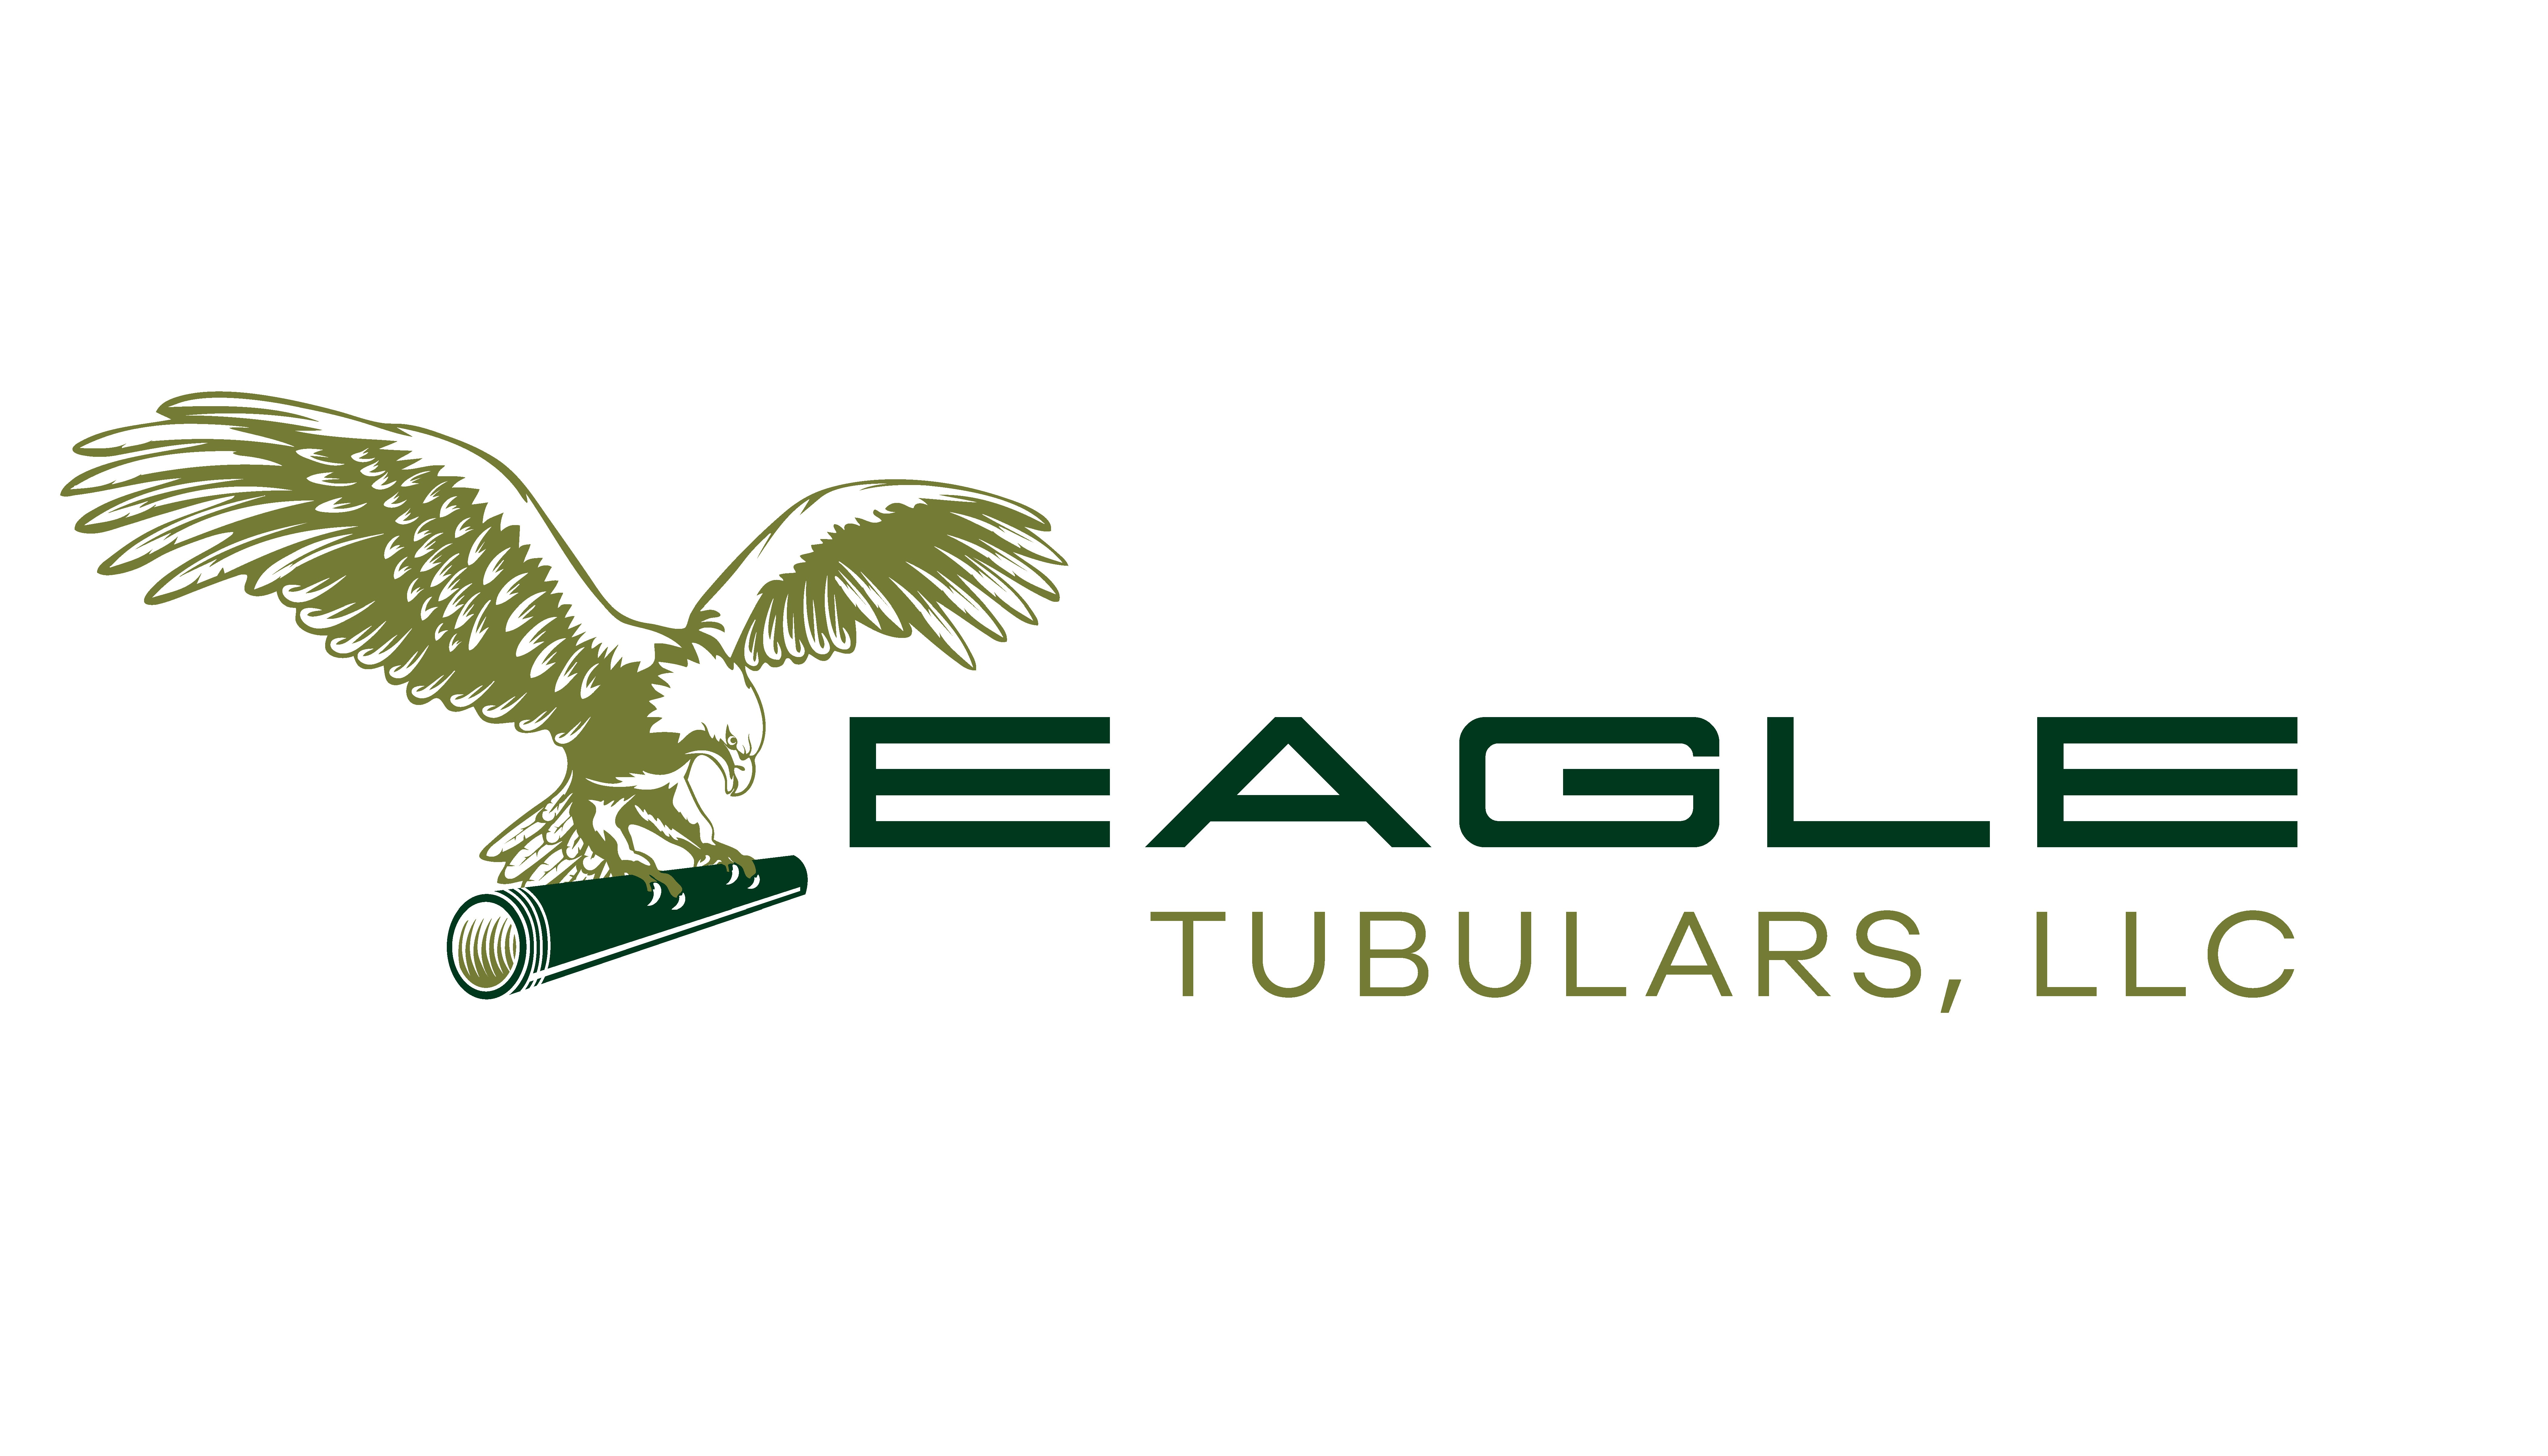 Eagle Tubulars, LLC